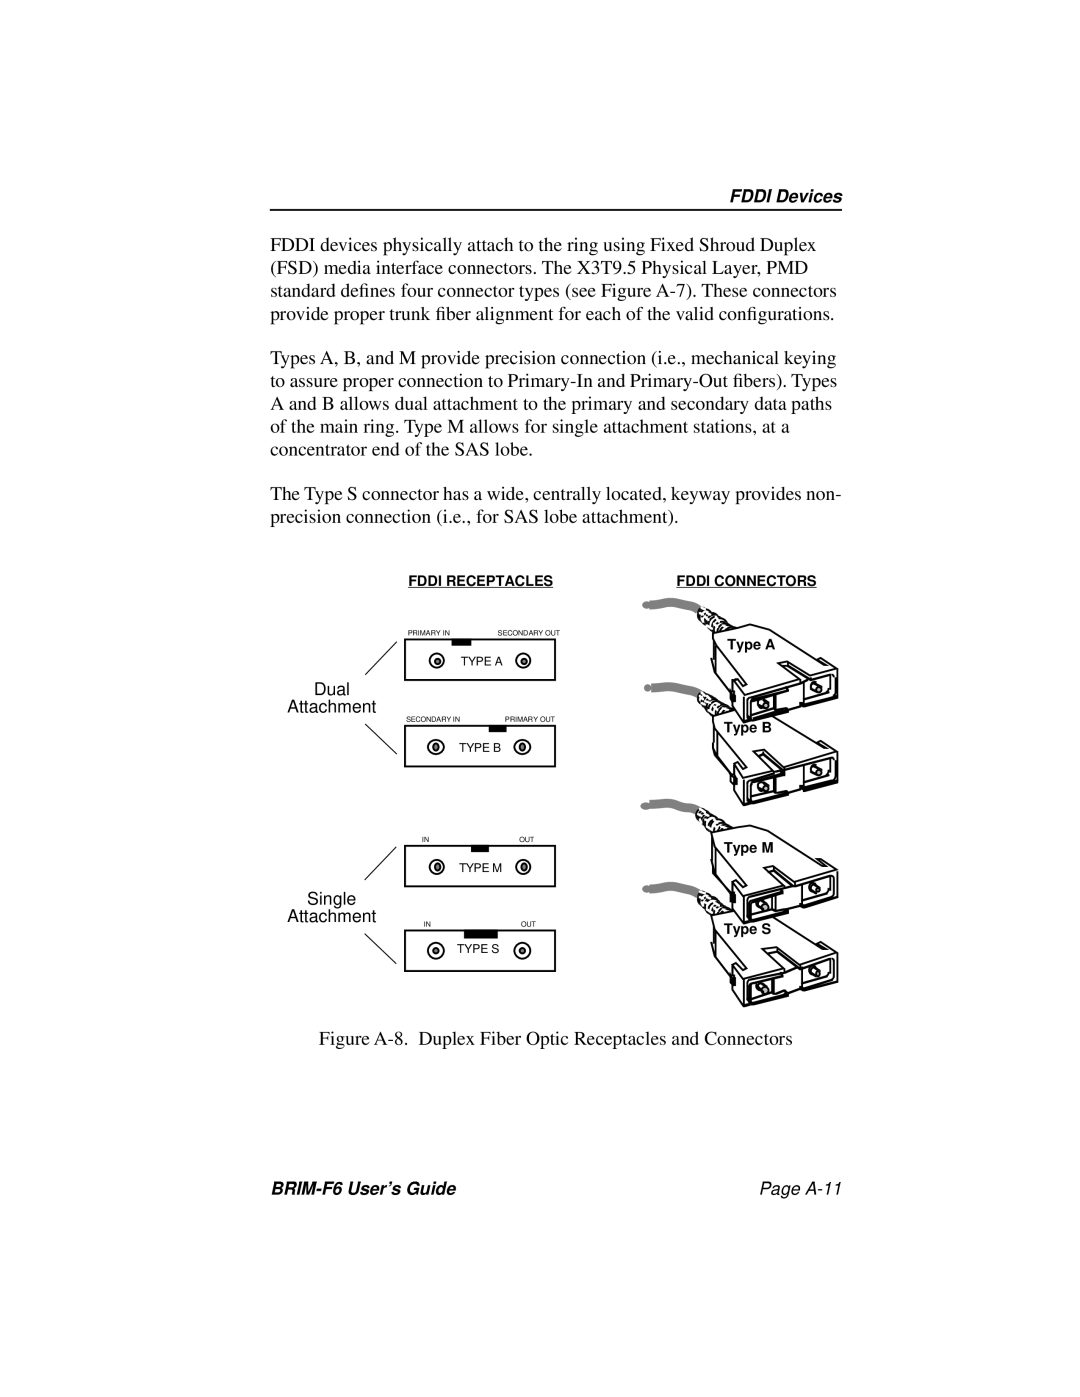 Cabletron Systems BRIM-F6 manual Figure A-8. Duplex Fiber Optic Receptacles and Connectors 